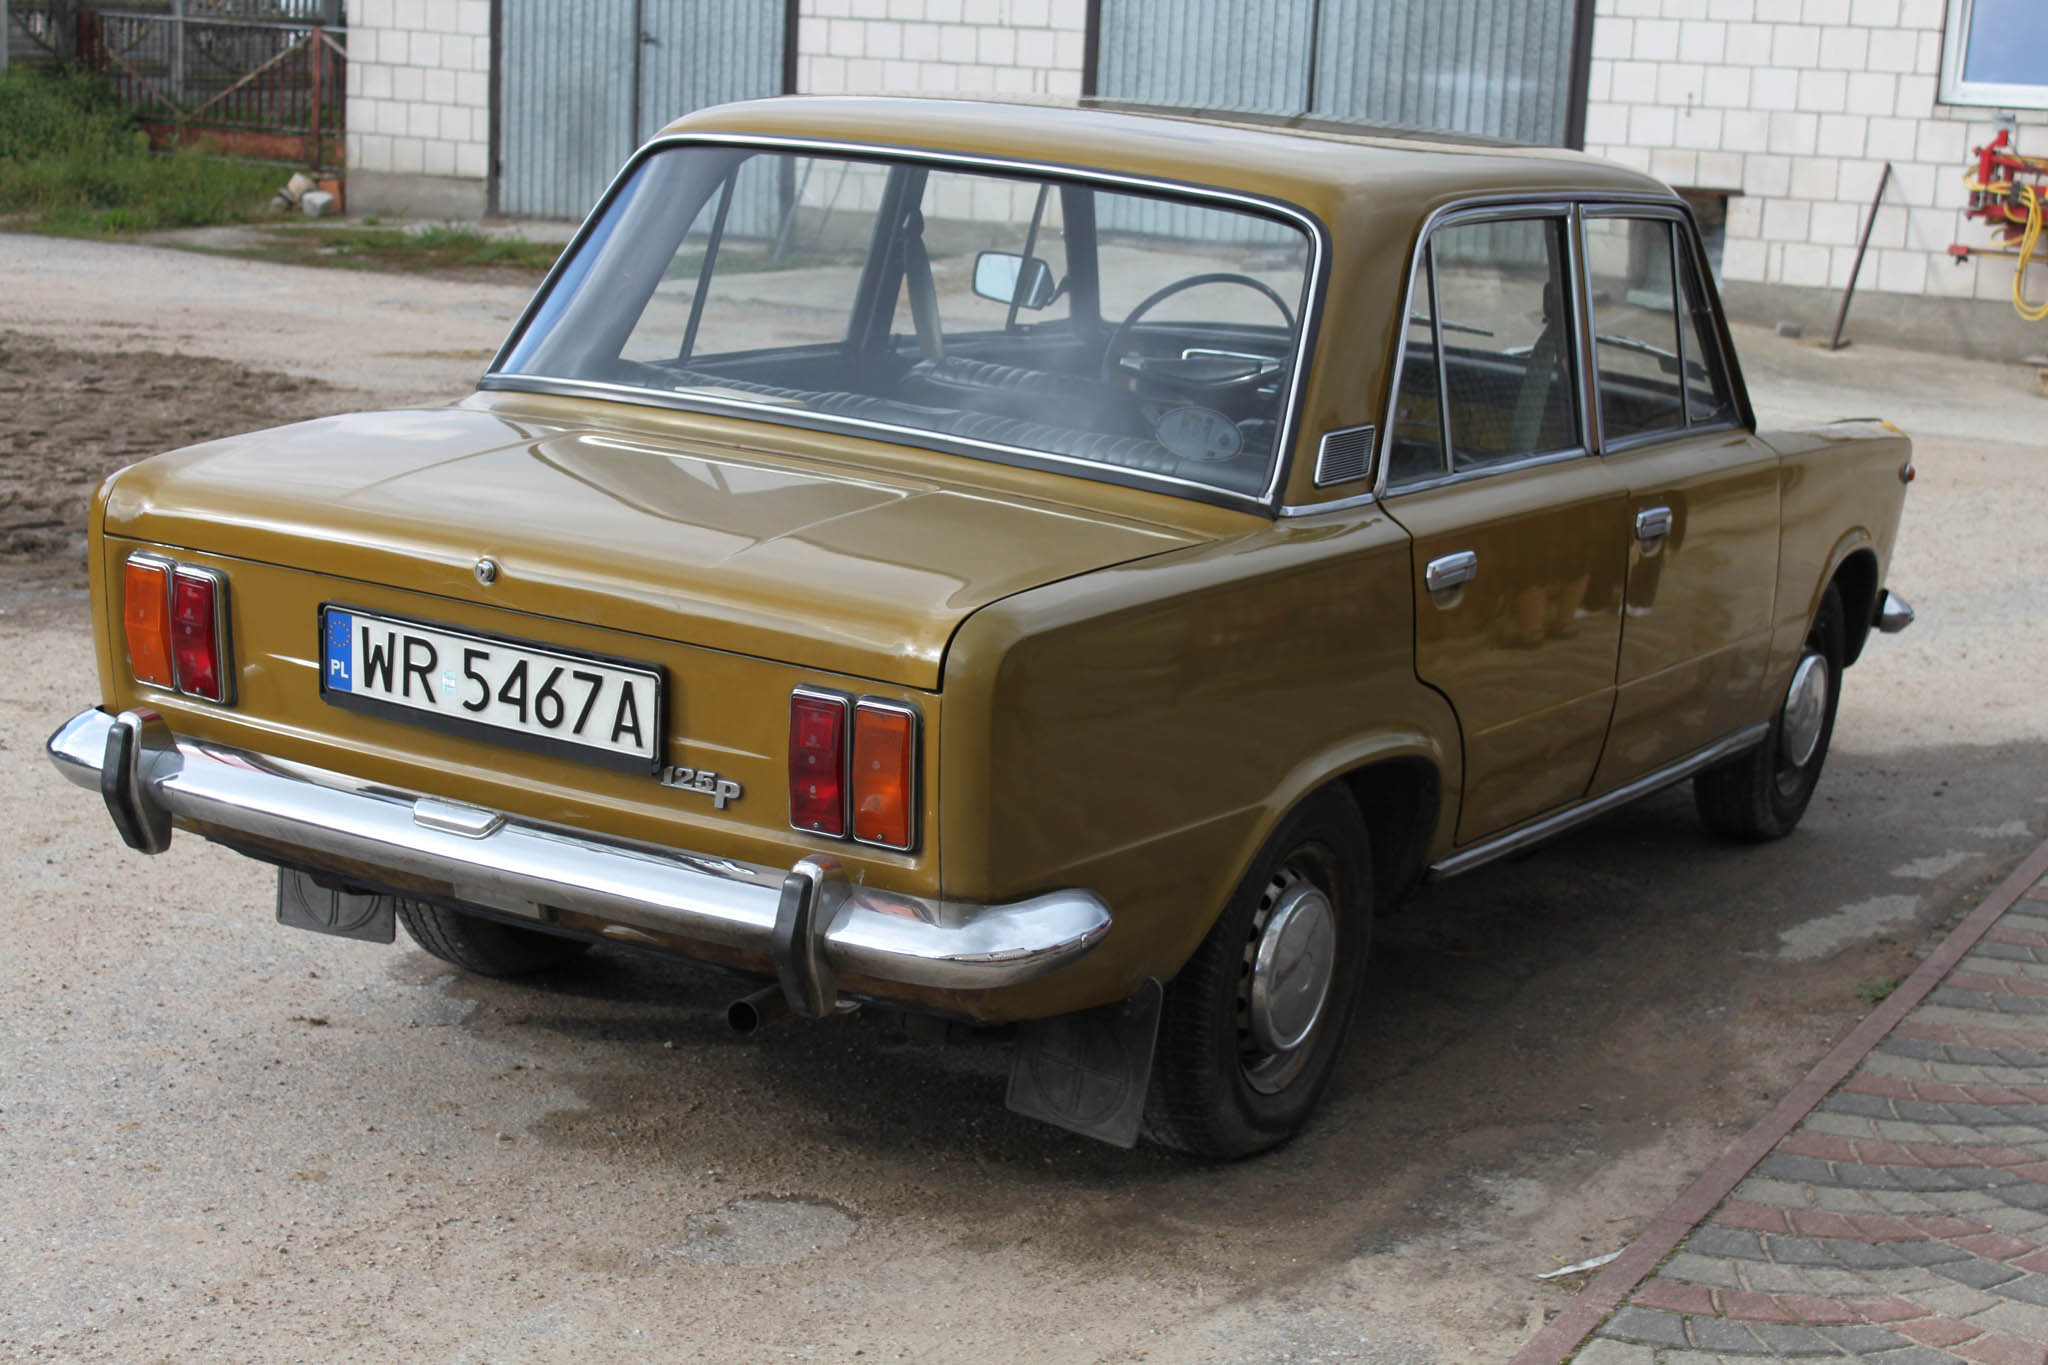 Polski Fiat 125p 1975 25000 PLN Ciechanowiec Giełda